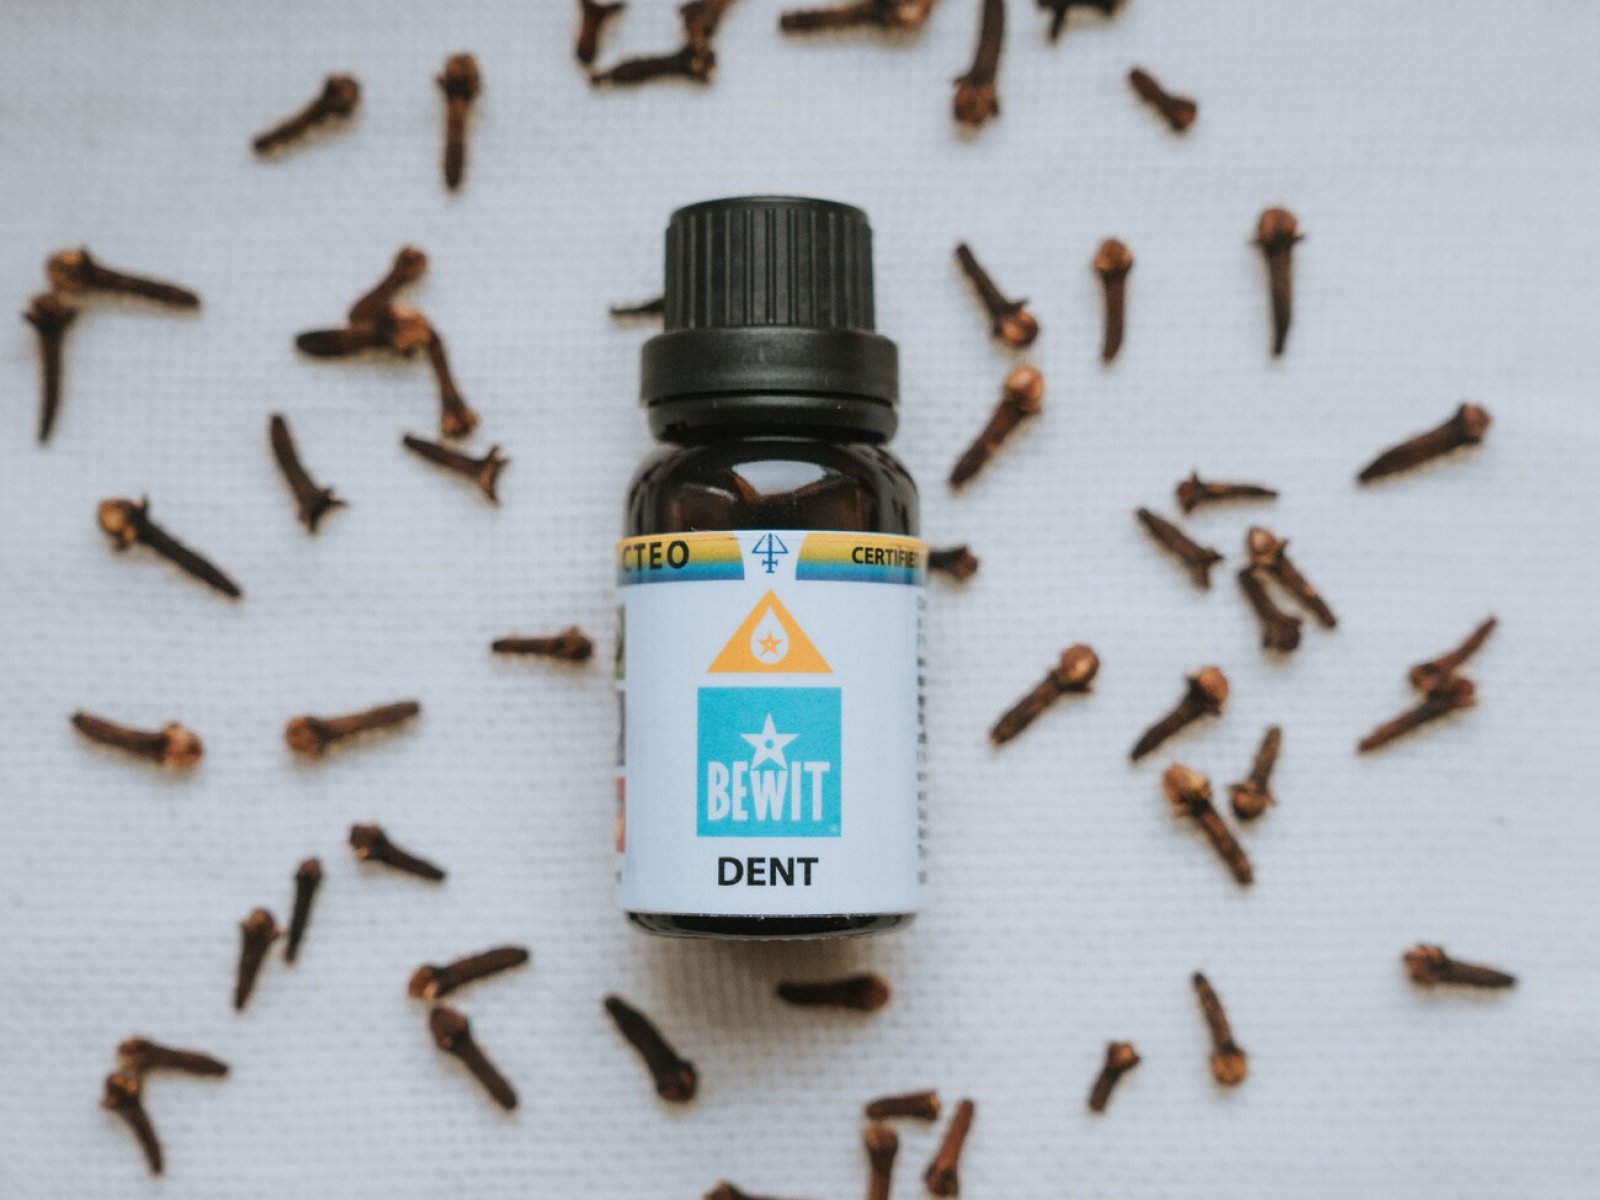 BEWIT DENT - A unique blend of essential oils - 9